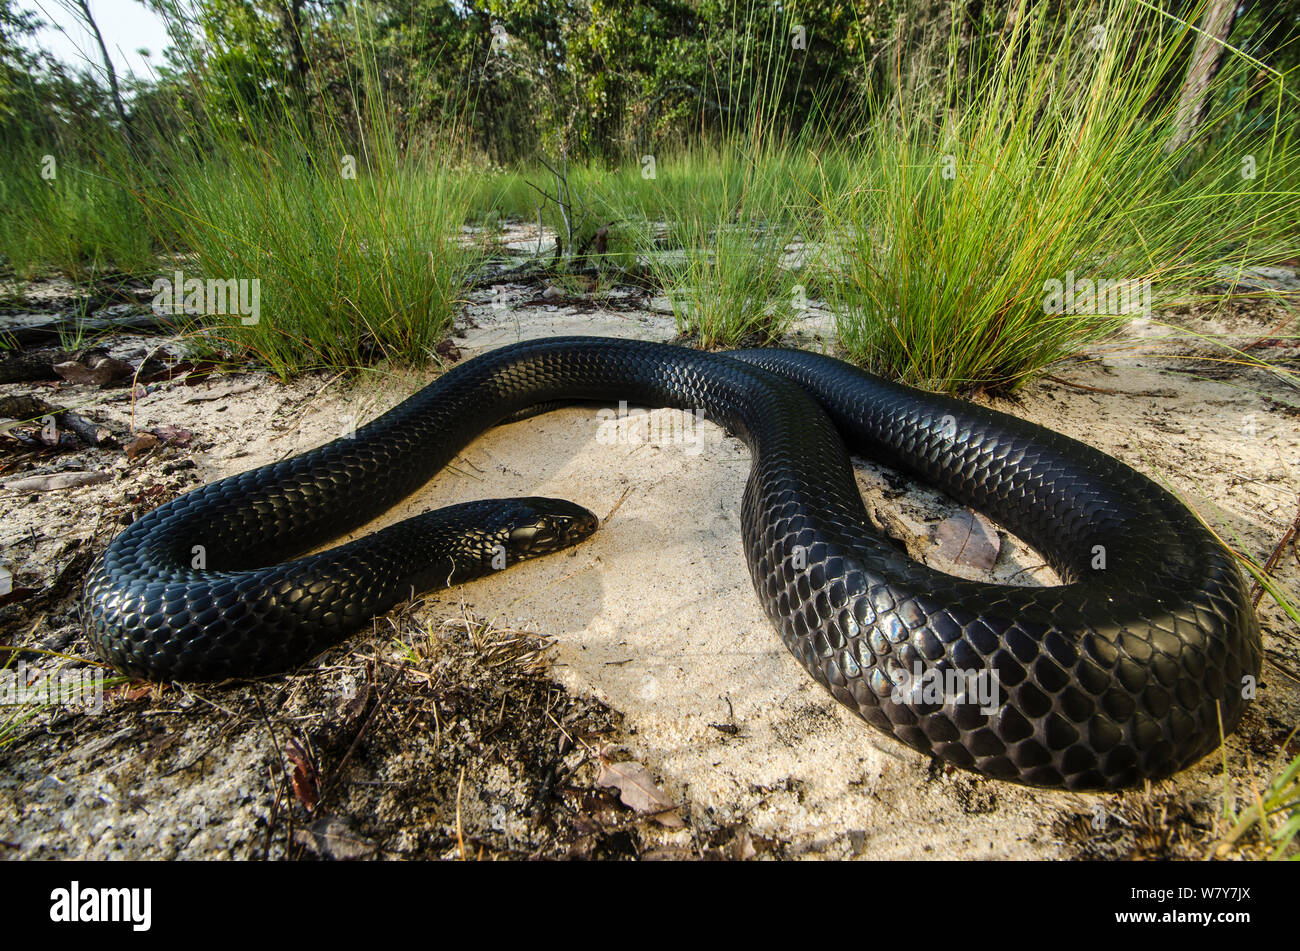 Östlichen indigo snake (Drymarchon coupéri) Orianne Indigo Snake bewahren, Telfair County, Georgia, USA, Juli. Captive, endemisch im Südosten der Vereinigten Staaten. Stockfoto